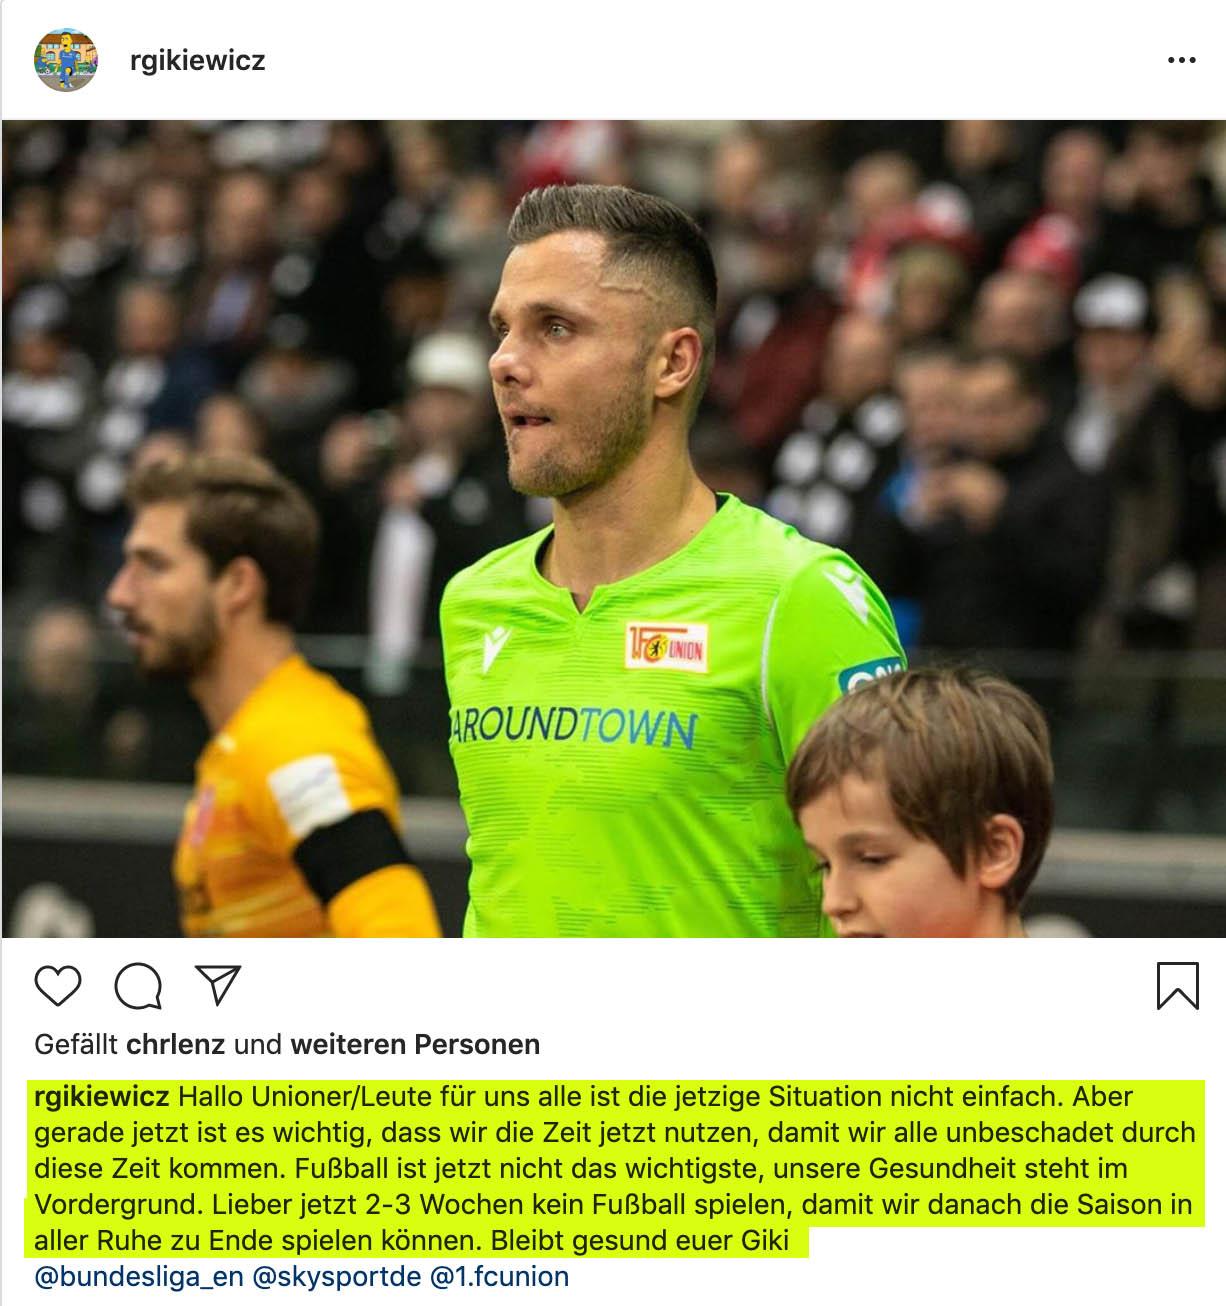 Rafal Gikeiwicz auf Instagram: Fußball ist jetzt nicht das wichtigste, unsere Gesundheit steht im Vordergrund. Lieber jetzt 2-3 Wochen kein Fußball spielen, damit wir danach die Saison in aller Ruhe zu Ende spielen können. Bleibt gesund euer Giki